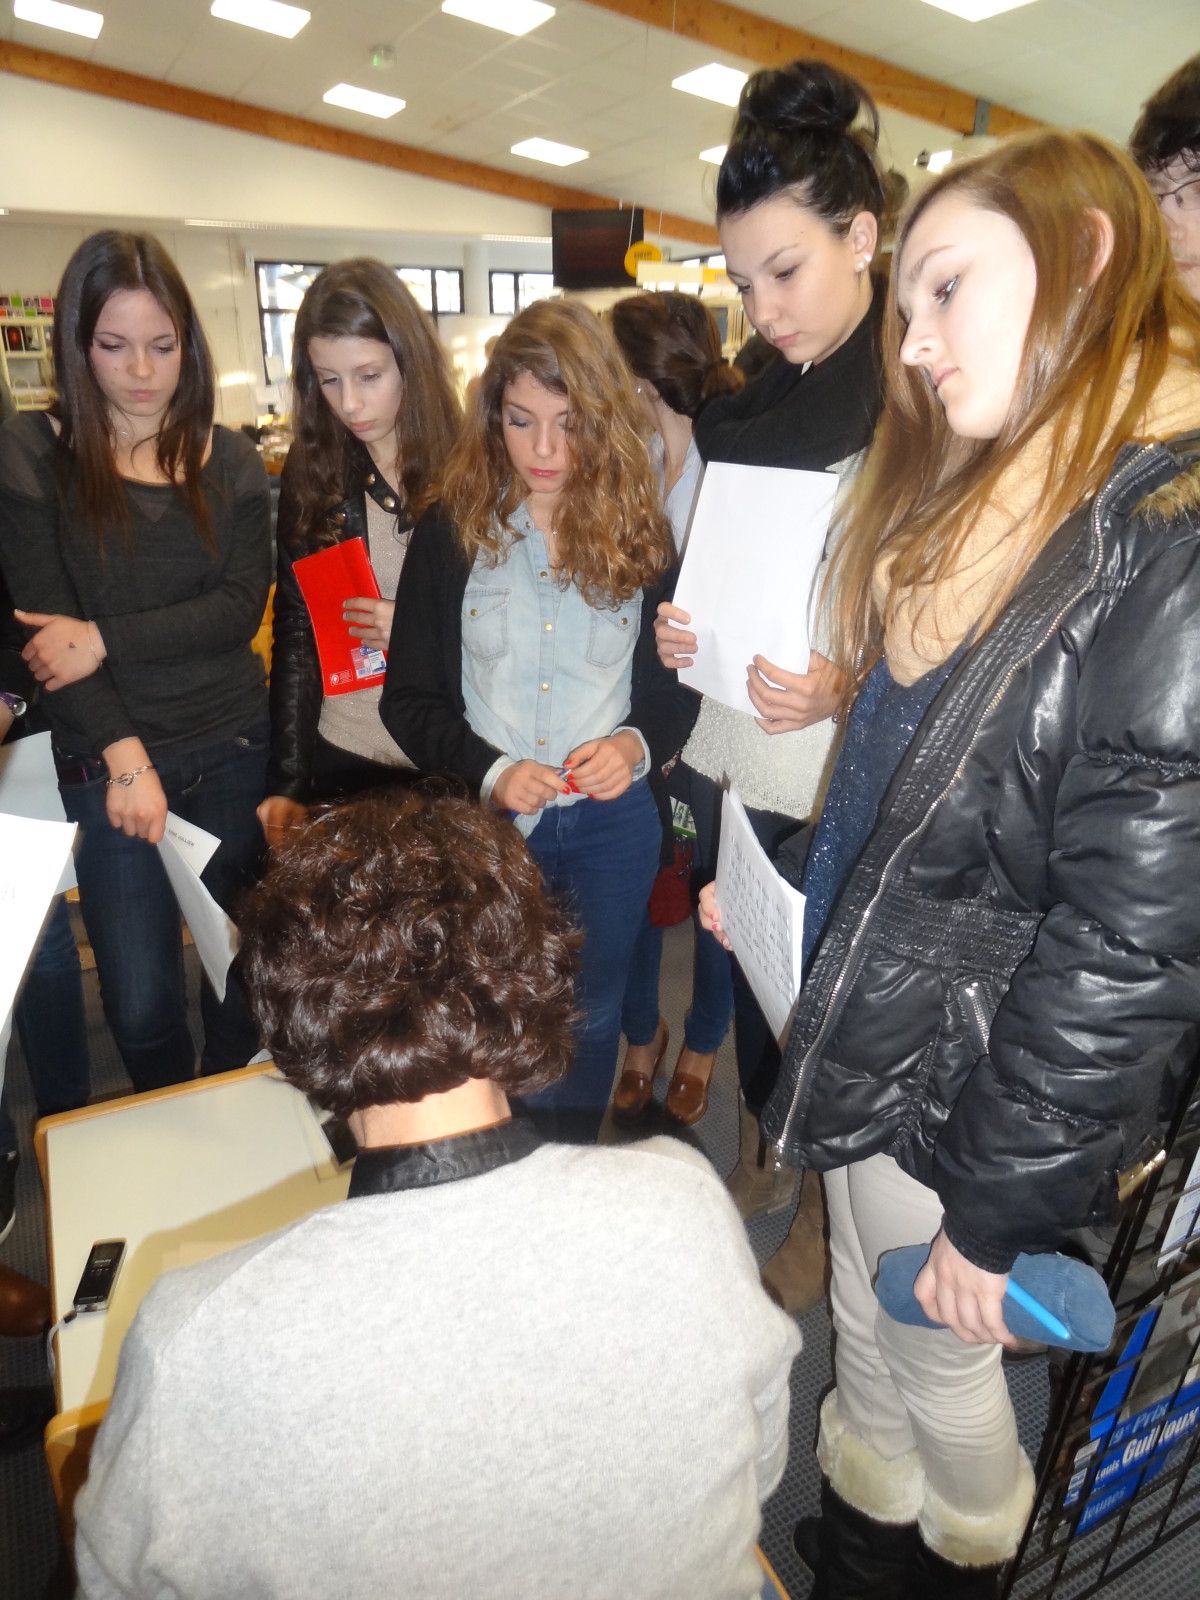 Jeudi 25 janvier 2013, au CDI du lycée de l'Iroise à Brest, les lycéens d'i-voix ont rencontré  Anne Jullien
auteure du recueil Flottilles.